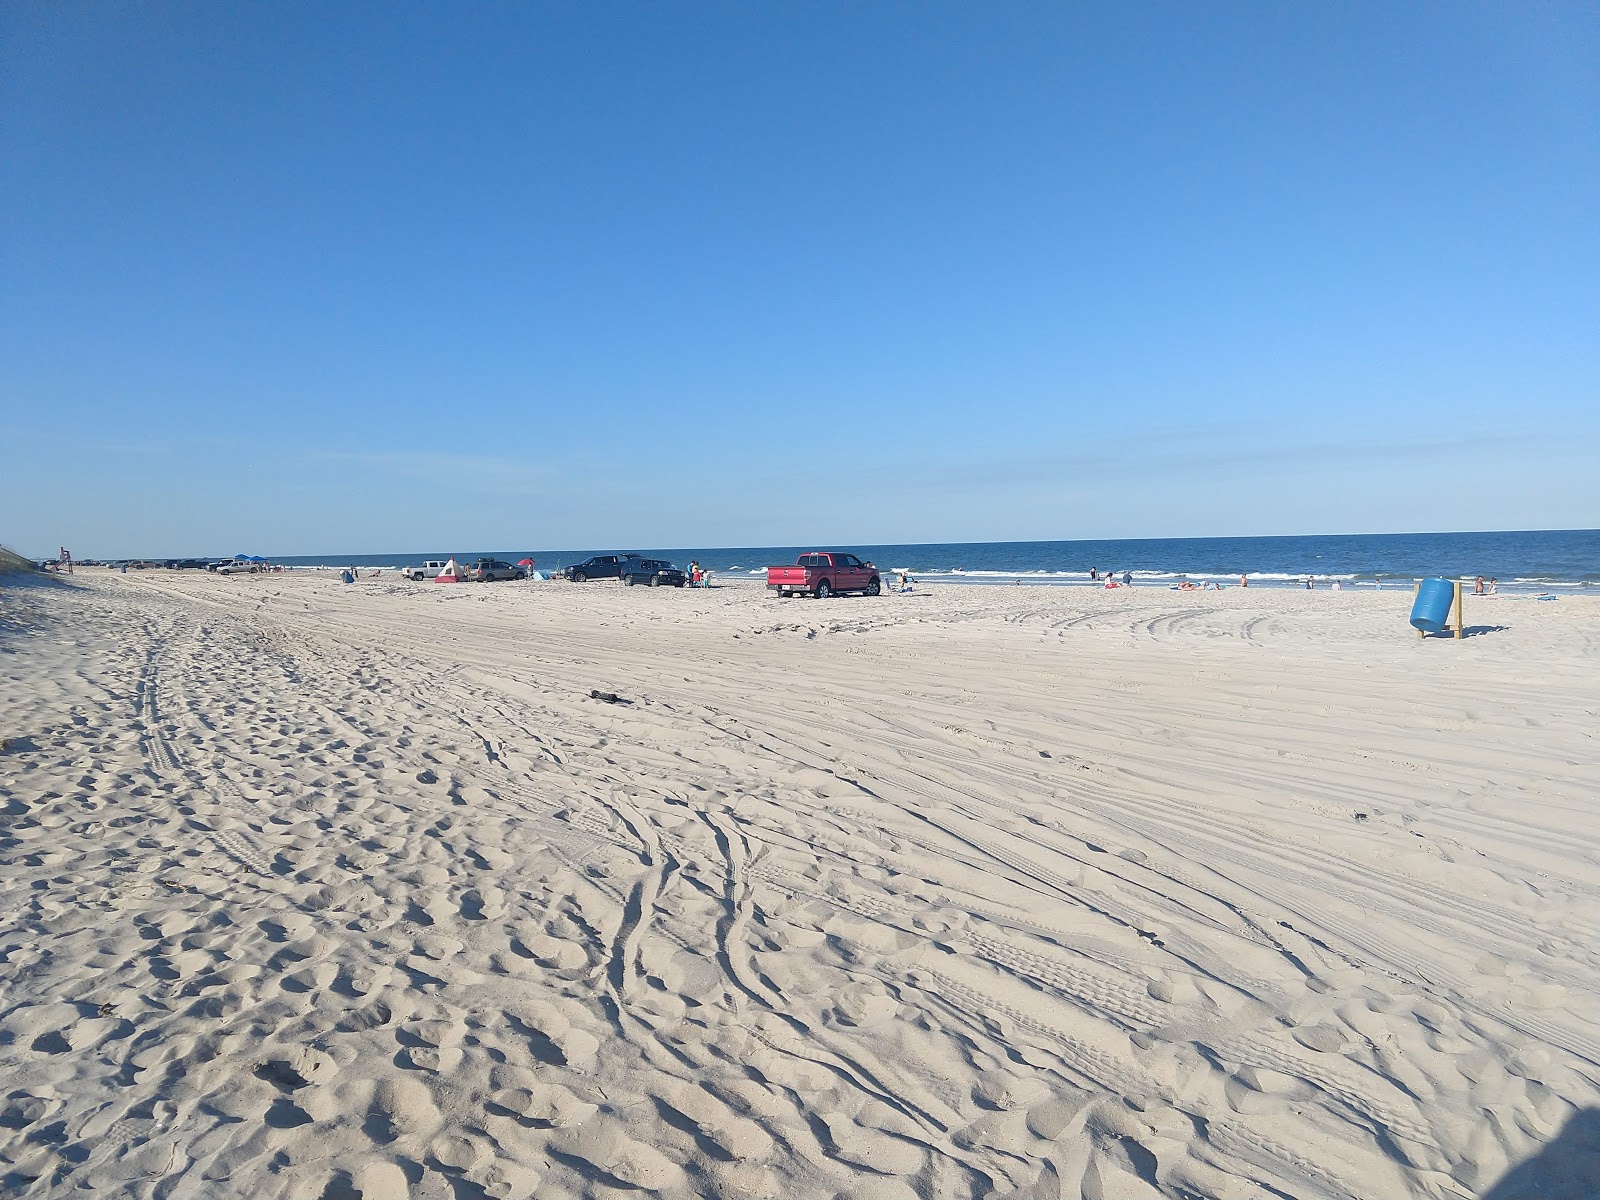 Foto af Peters Point beach - populært sted blandt afslapningskendere